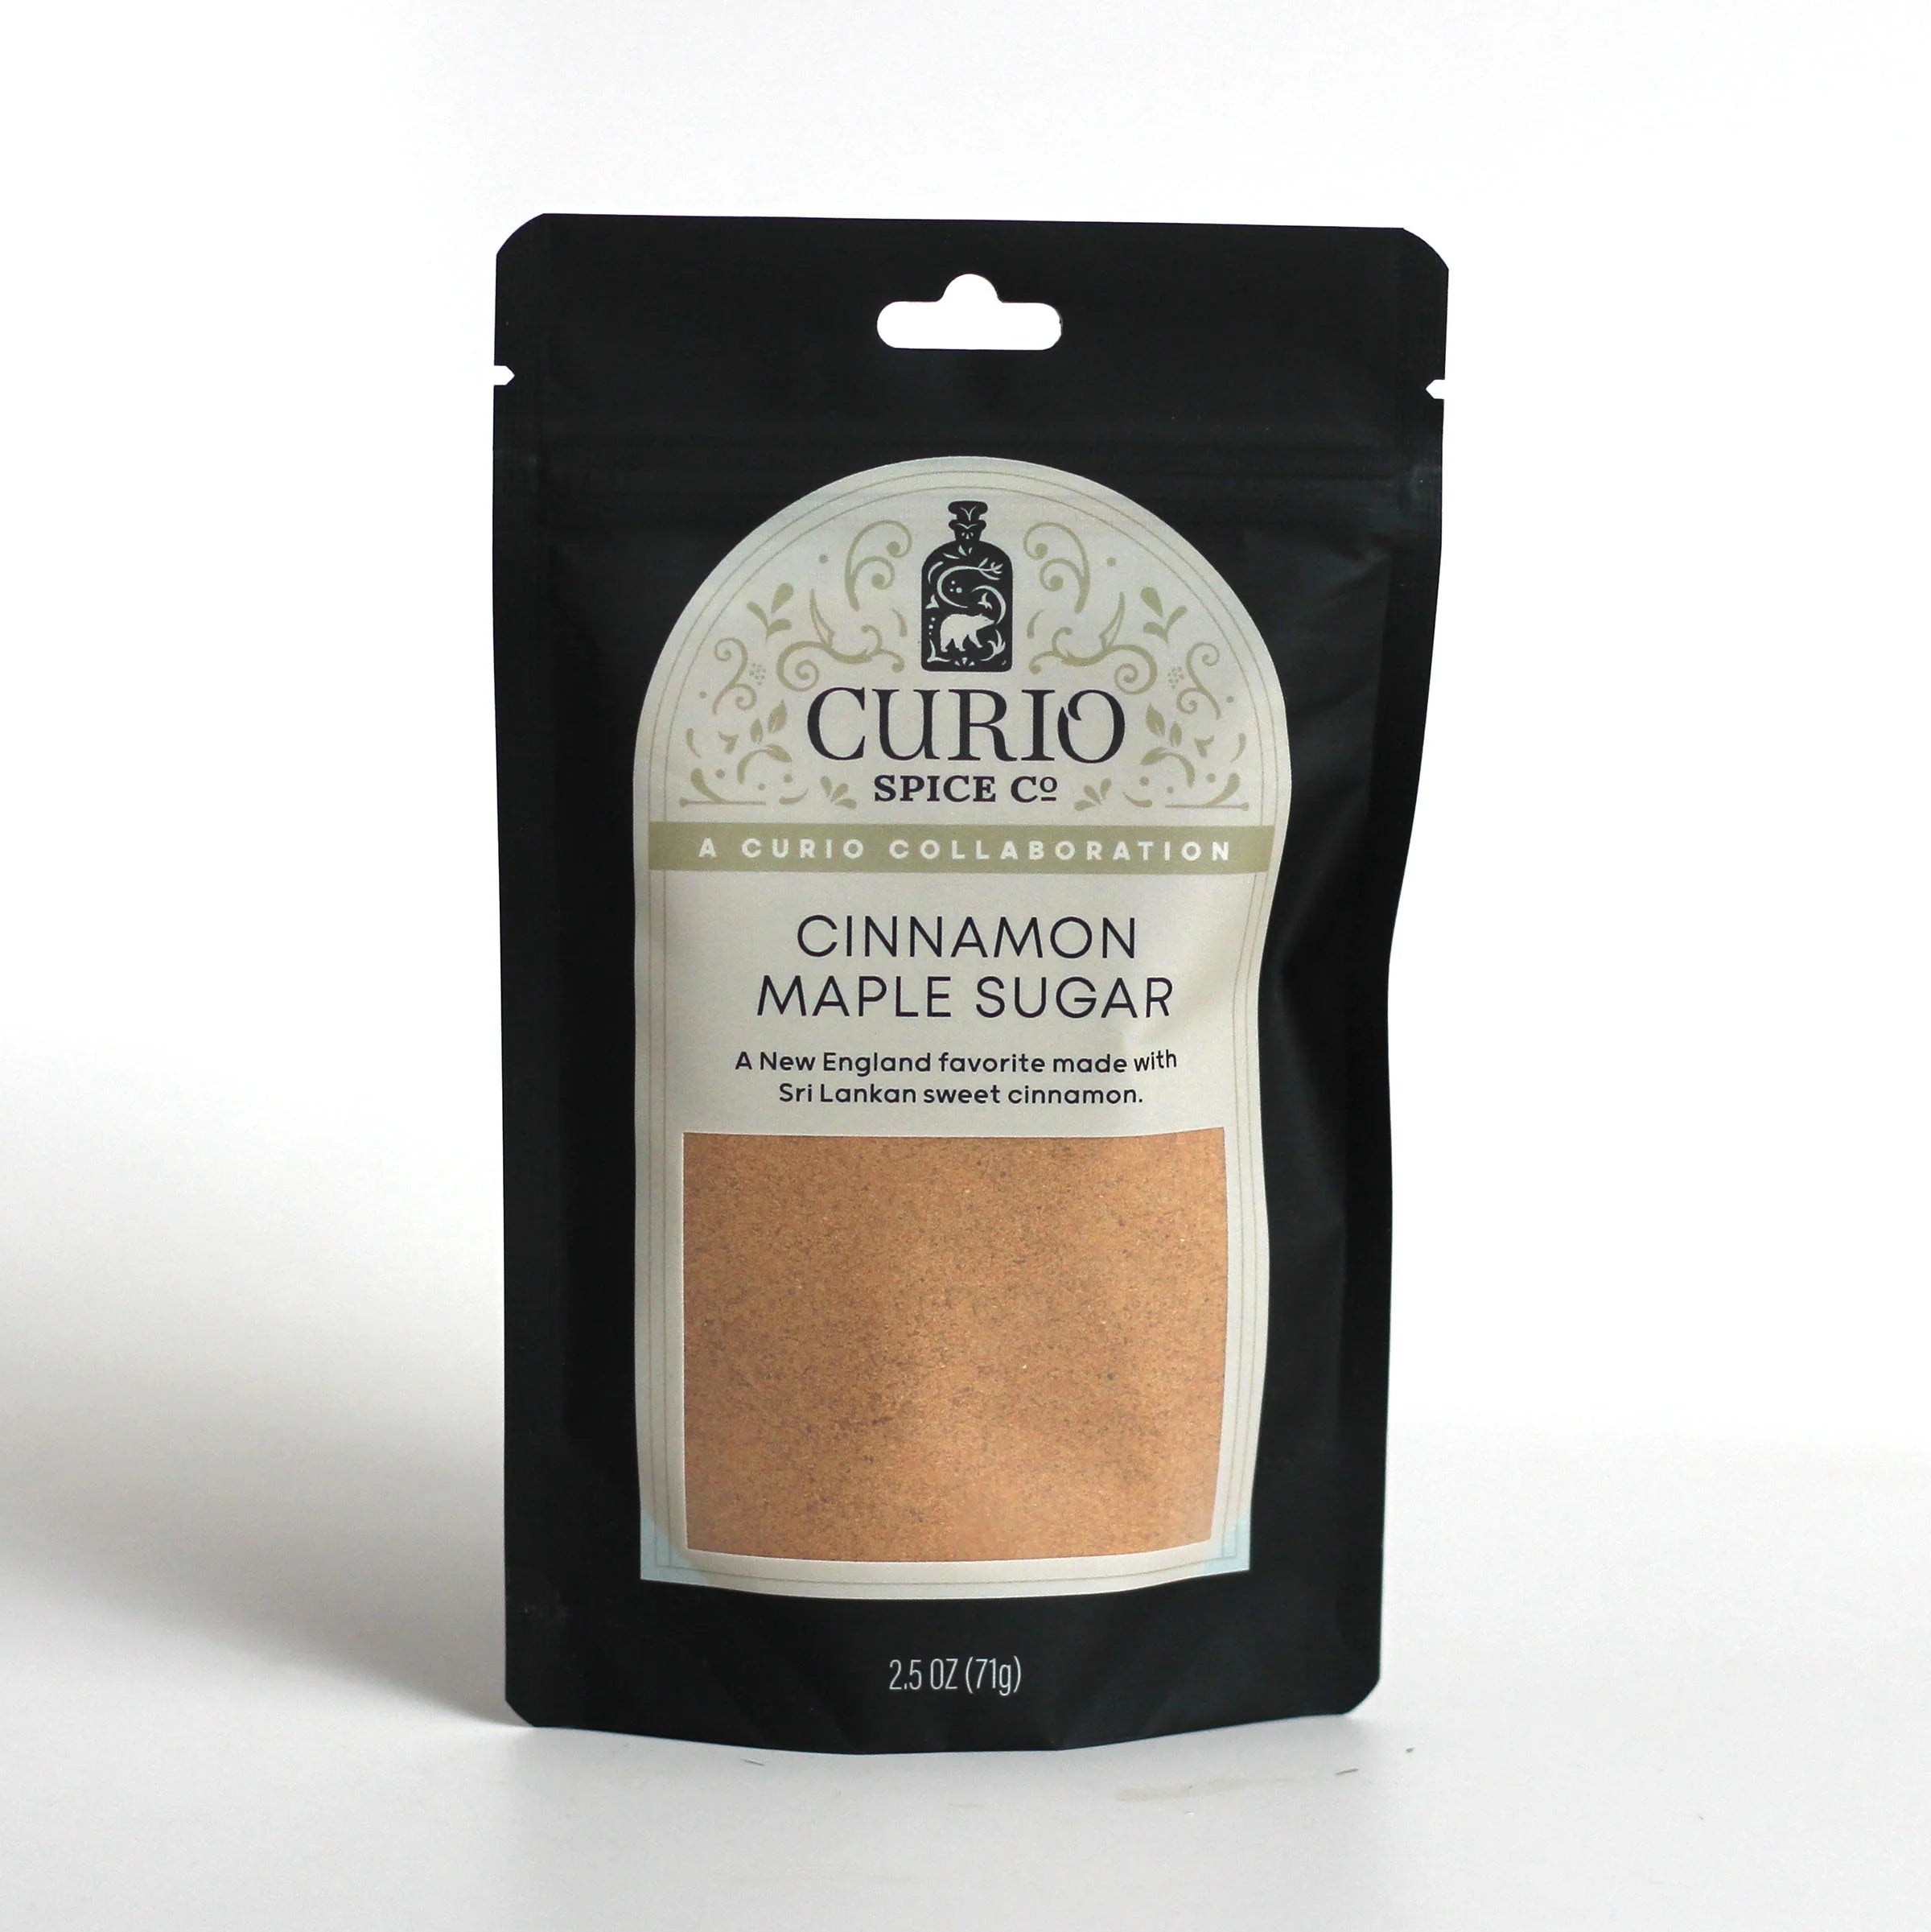 Curio Spice Co Cinnamon Maple Sugar- Olive Oil Etcetera